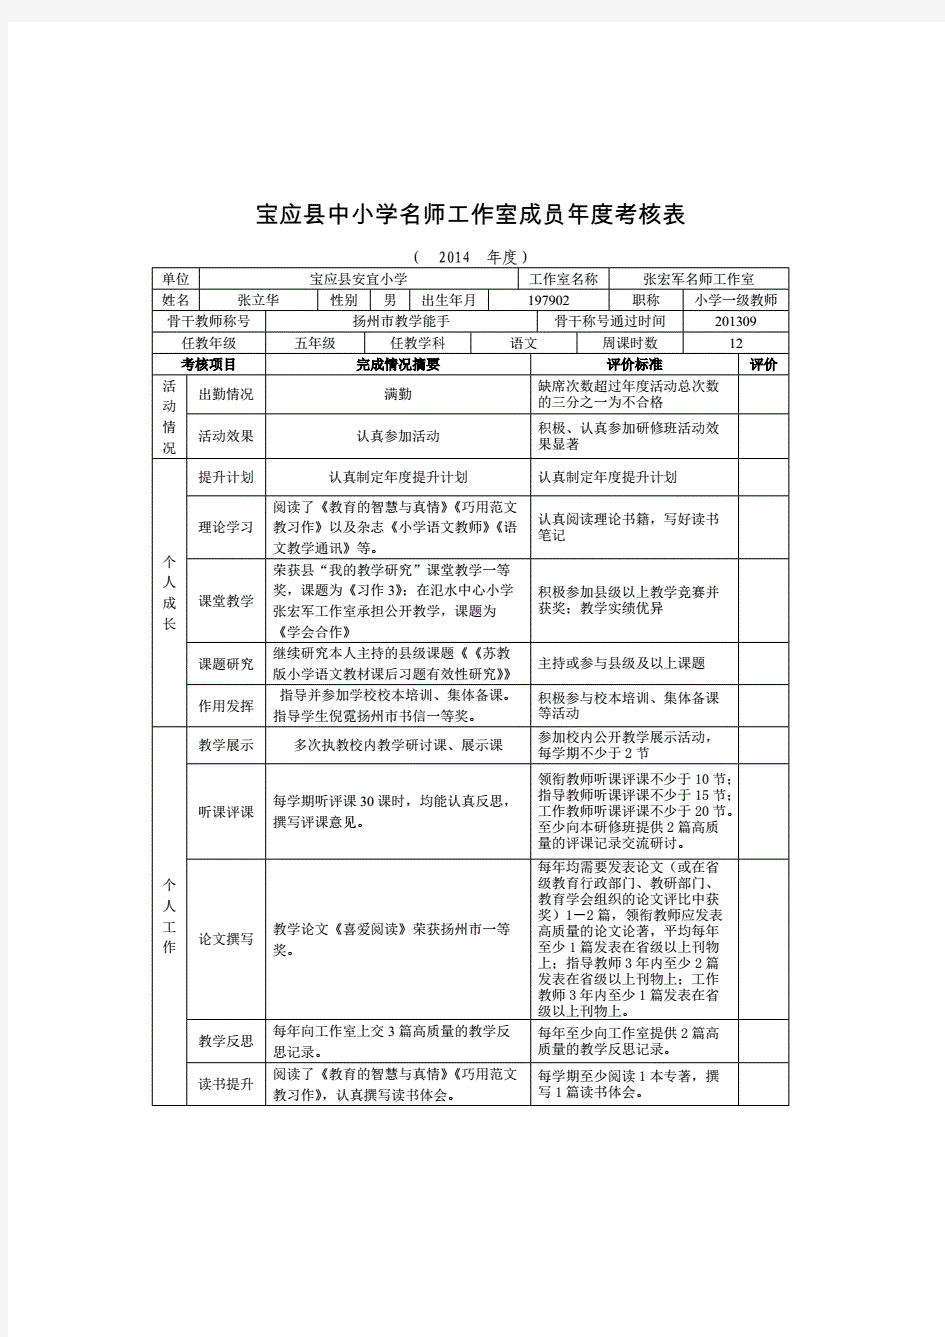 宝应县中小学名师工作室成员年度考核表